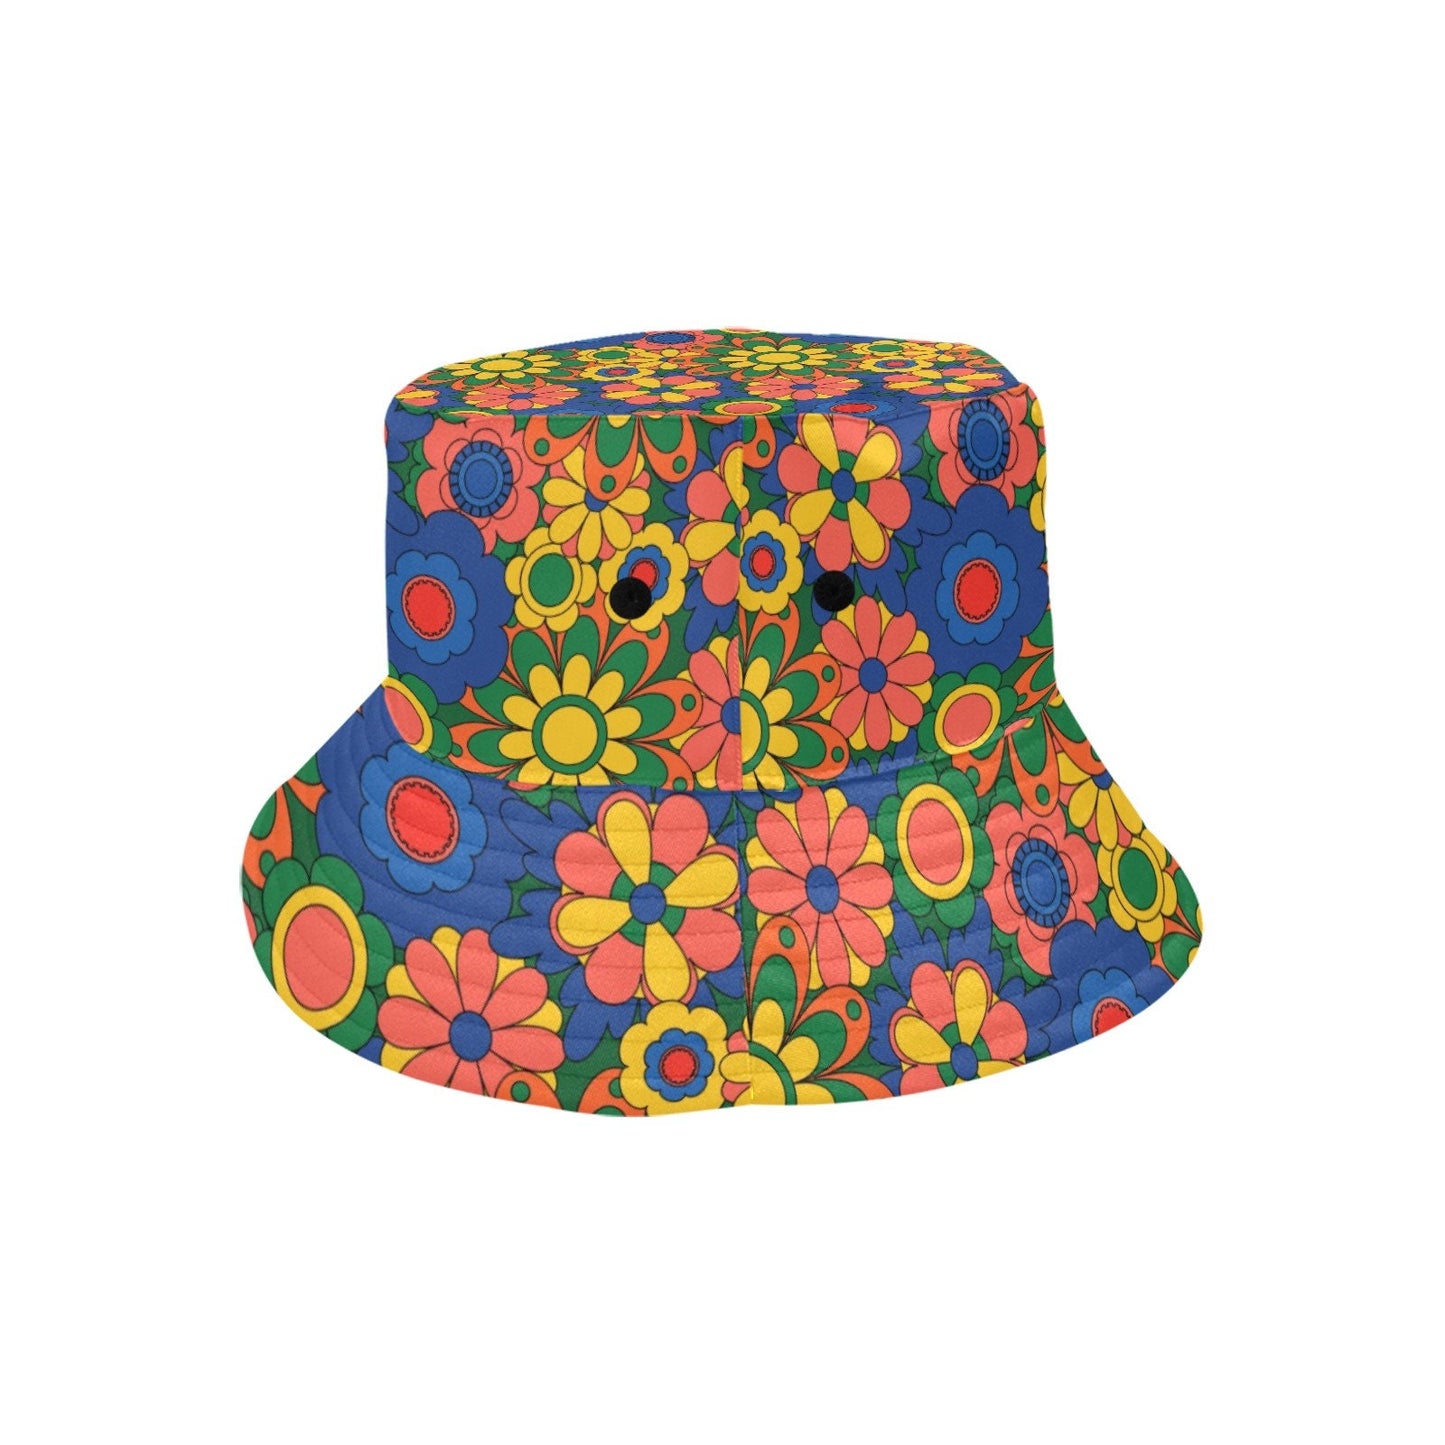 Eimerhut, Hippie-Hut, Mod-Hut, Unisex-Hut, Retro-Hut, Hut im 60er-70er-Jahre-Stil, Blumenhut, Boho-Hut, mehrfarbiger Eimerhut, blauer Eimerhut